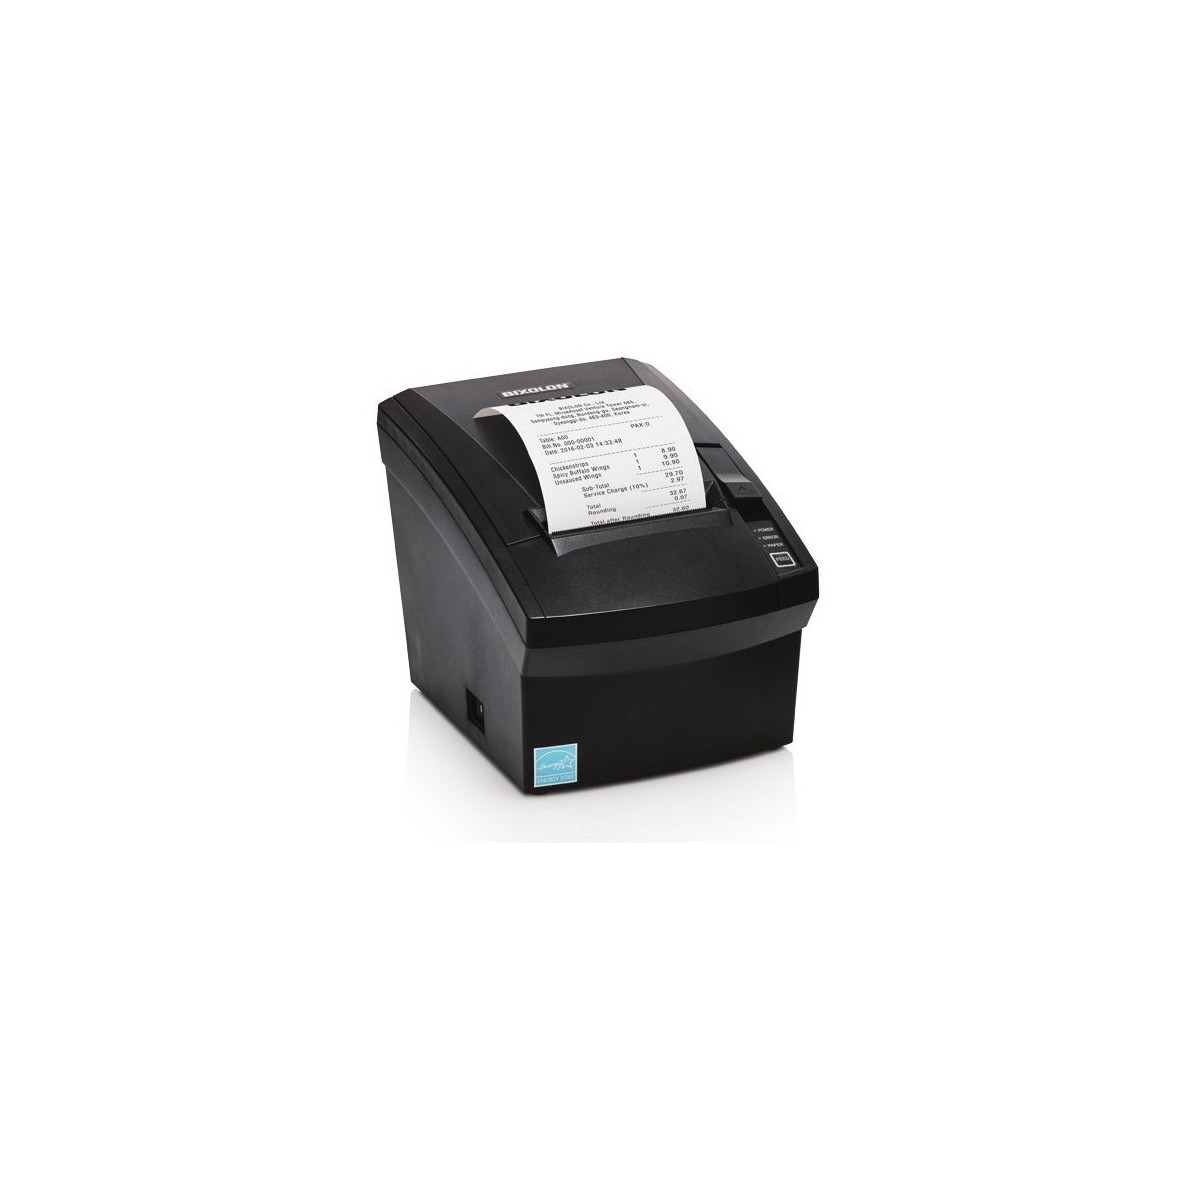 BIXOLON SRP-332II - Direct thermal - POS printer - 203 x 203 DPI - 220 mm-sec - 24 x 24 mm - 1D,2D,Code 39,Code 93,Data Matrix,E